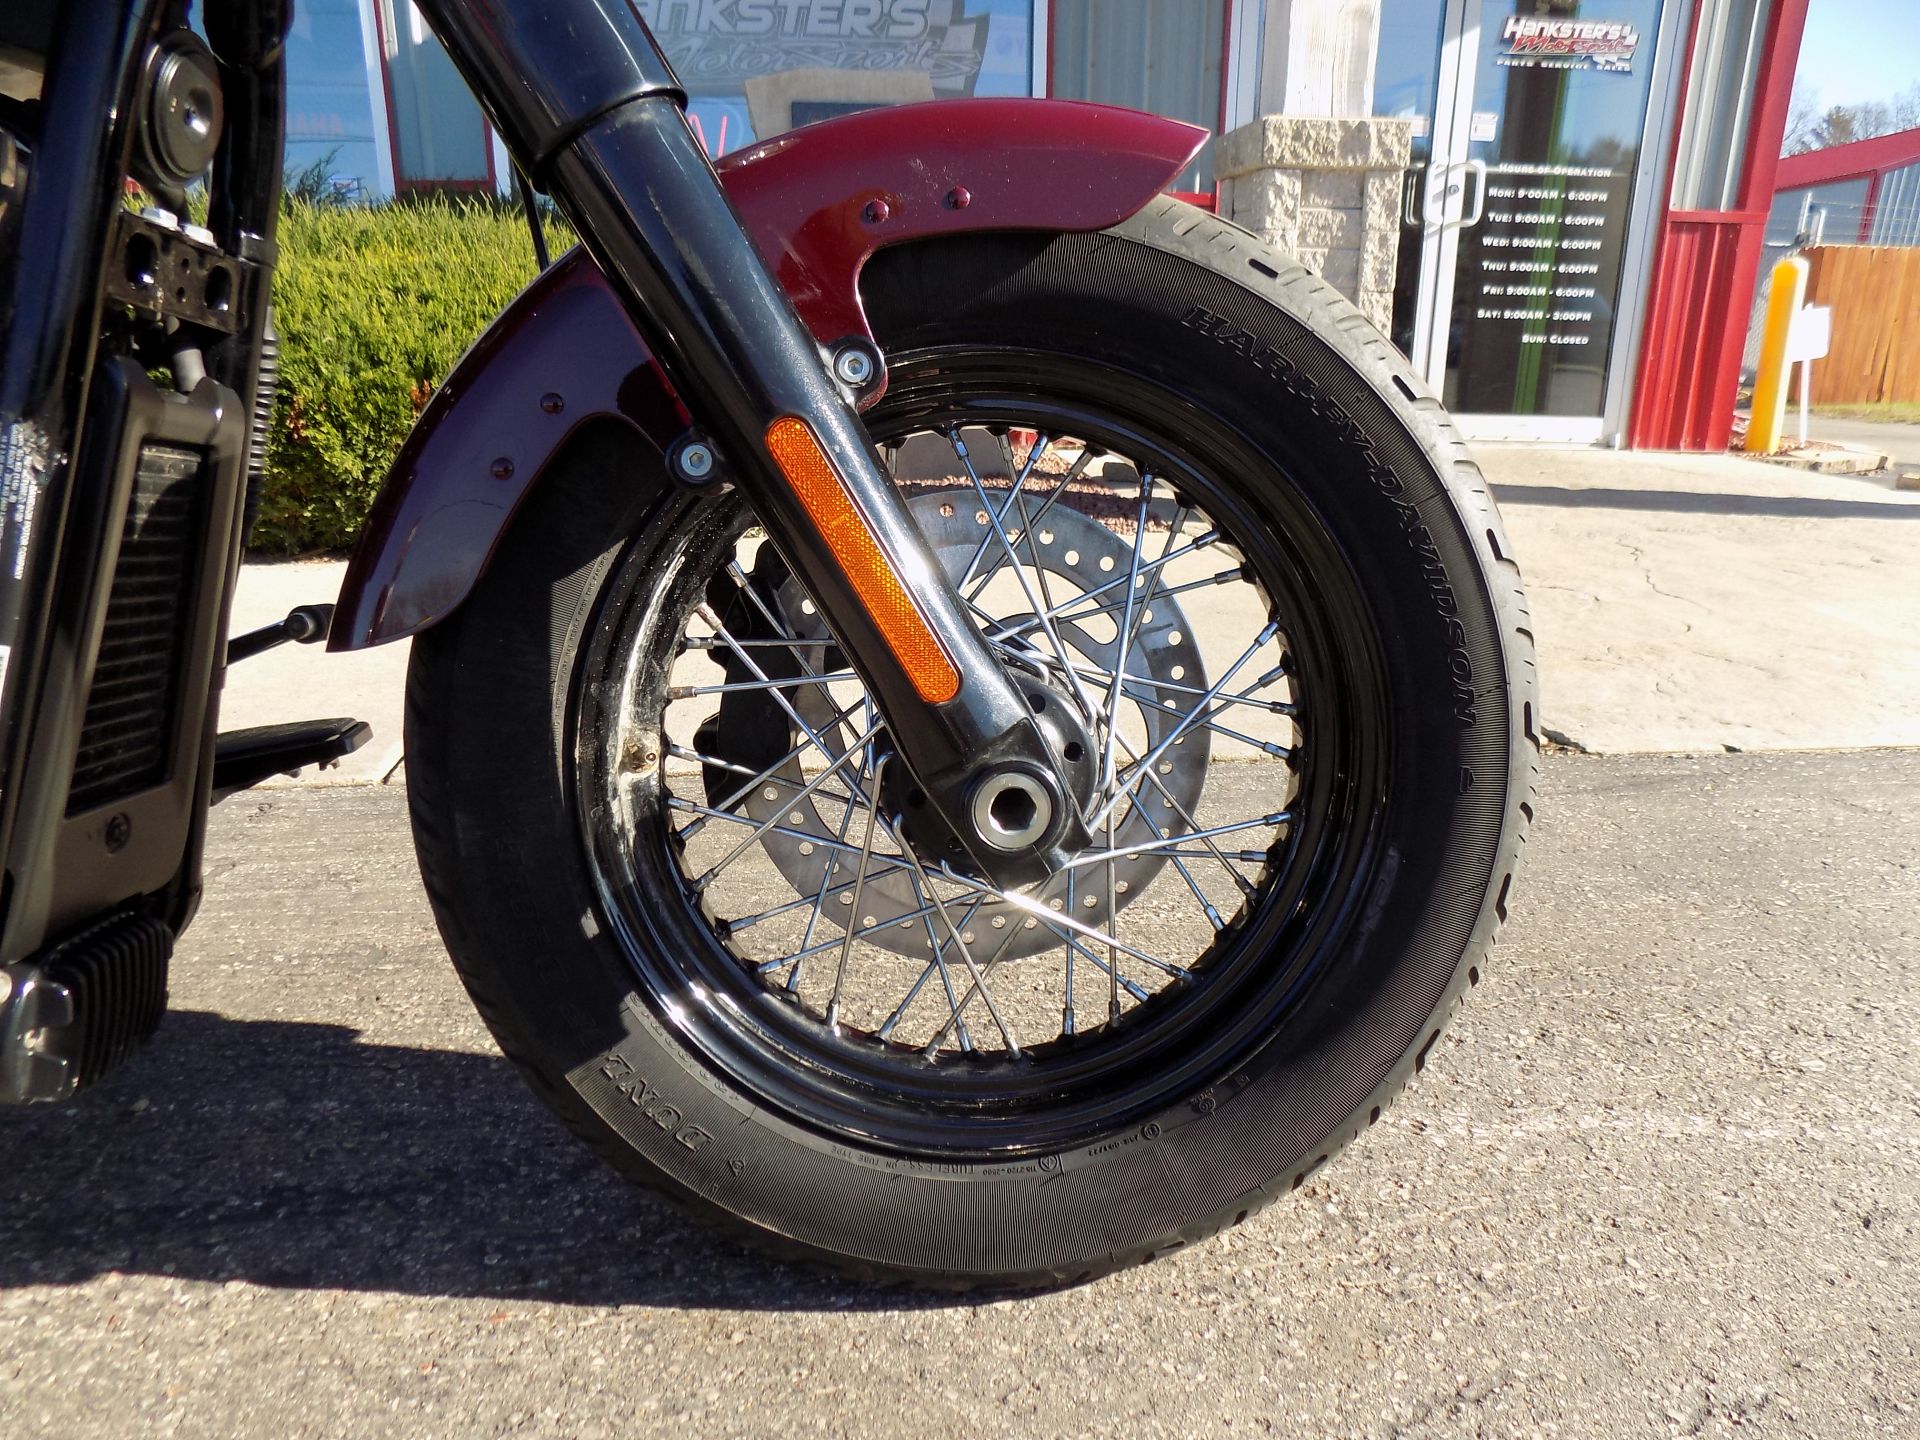 2020 Harley-Davidson Softail Slim® in Janesville, Wisconsin - Photo 11